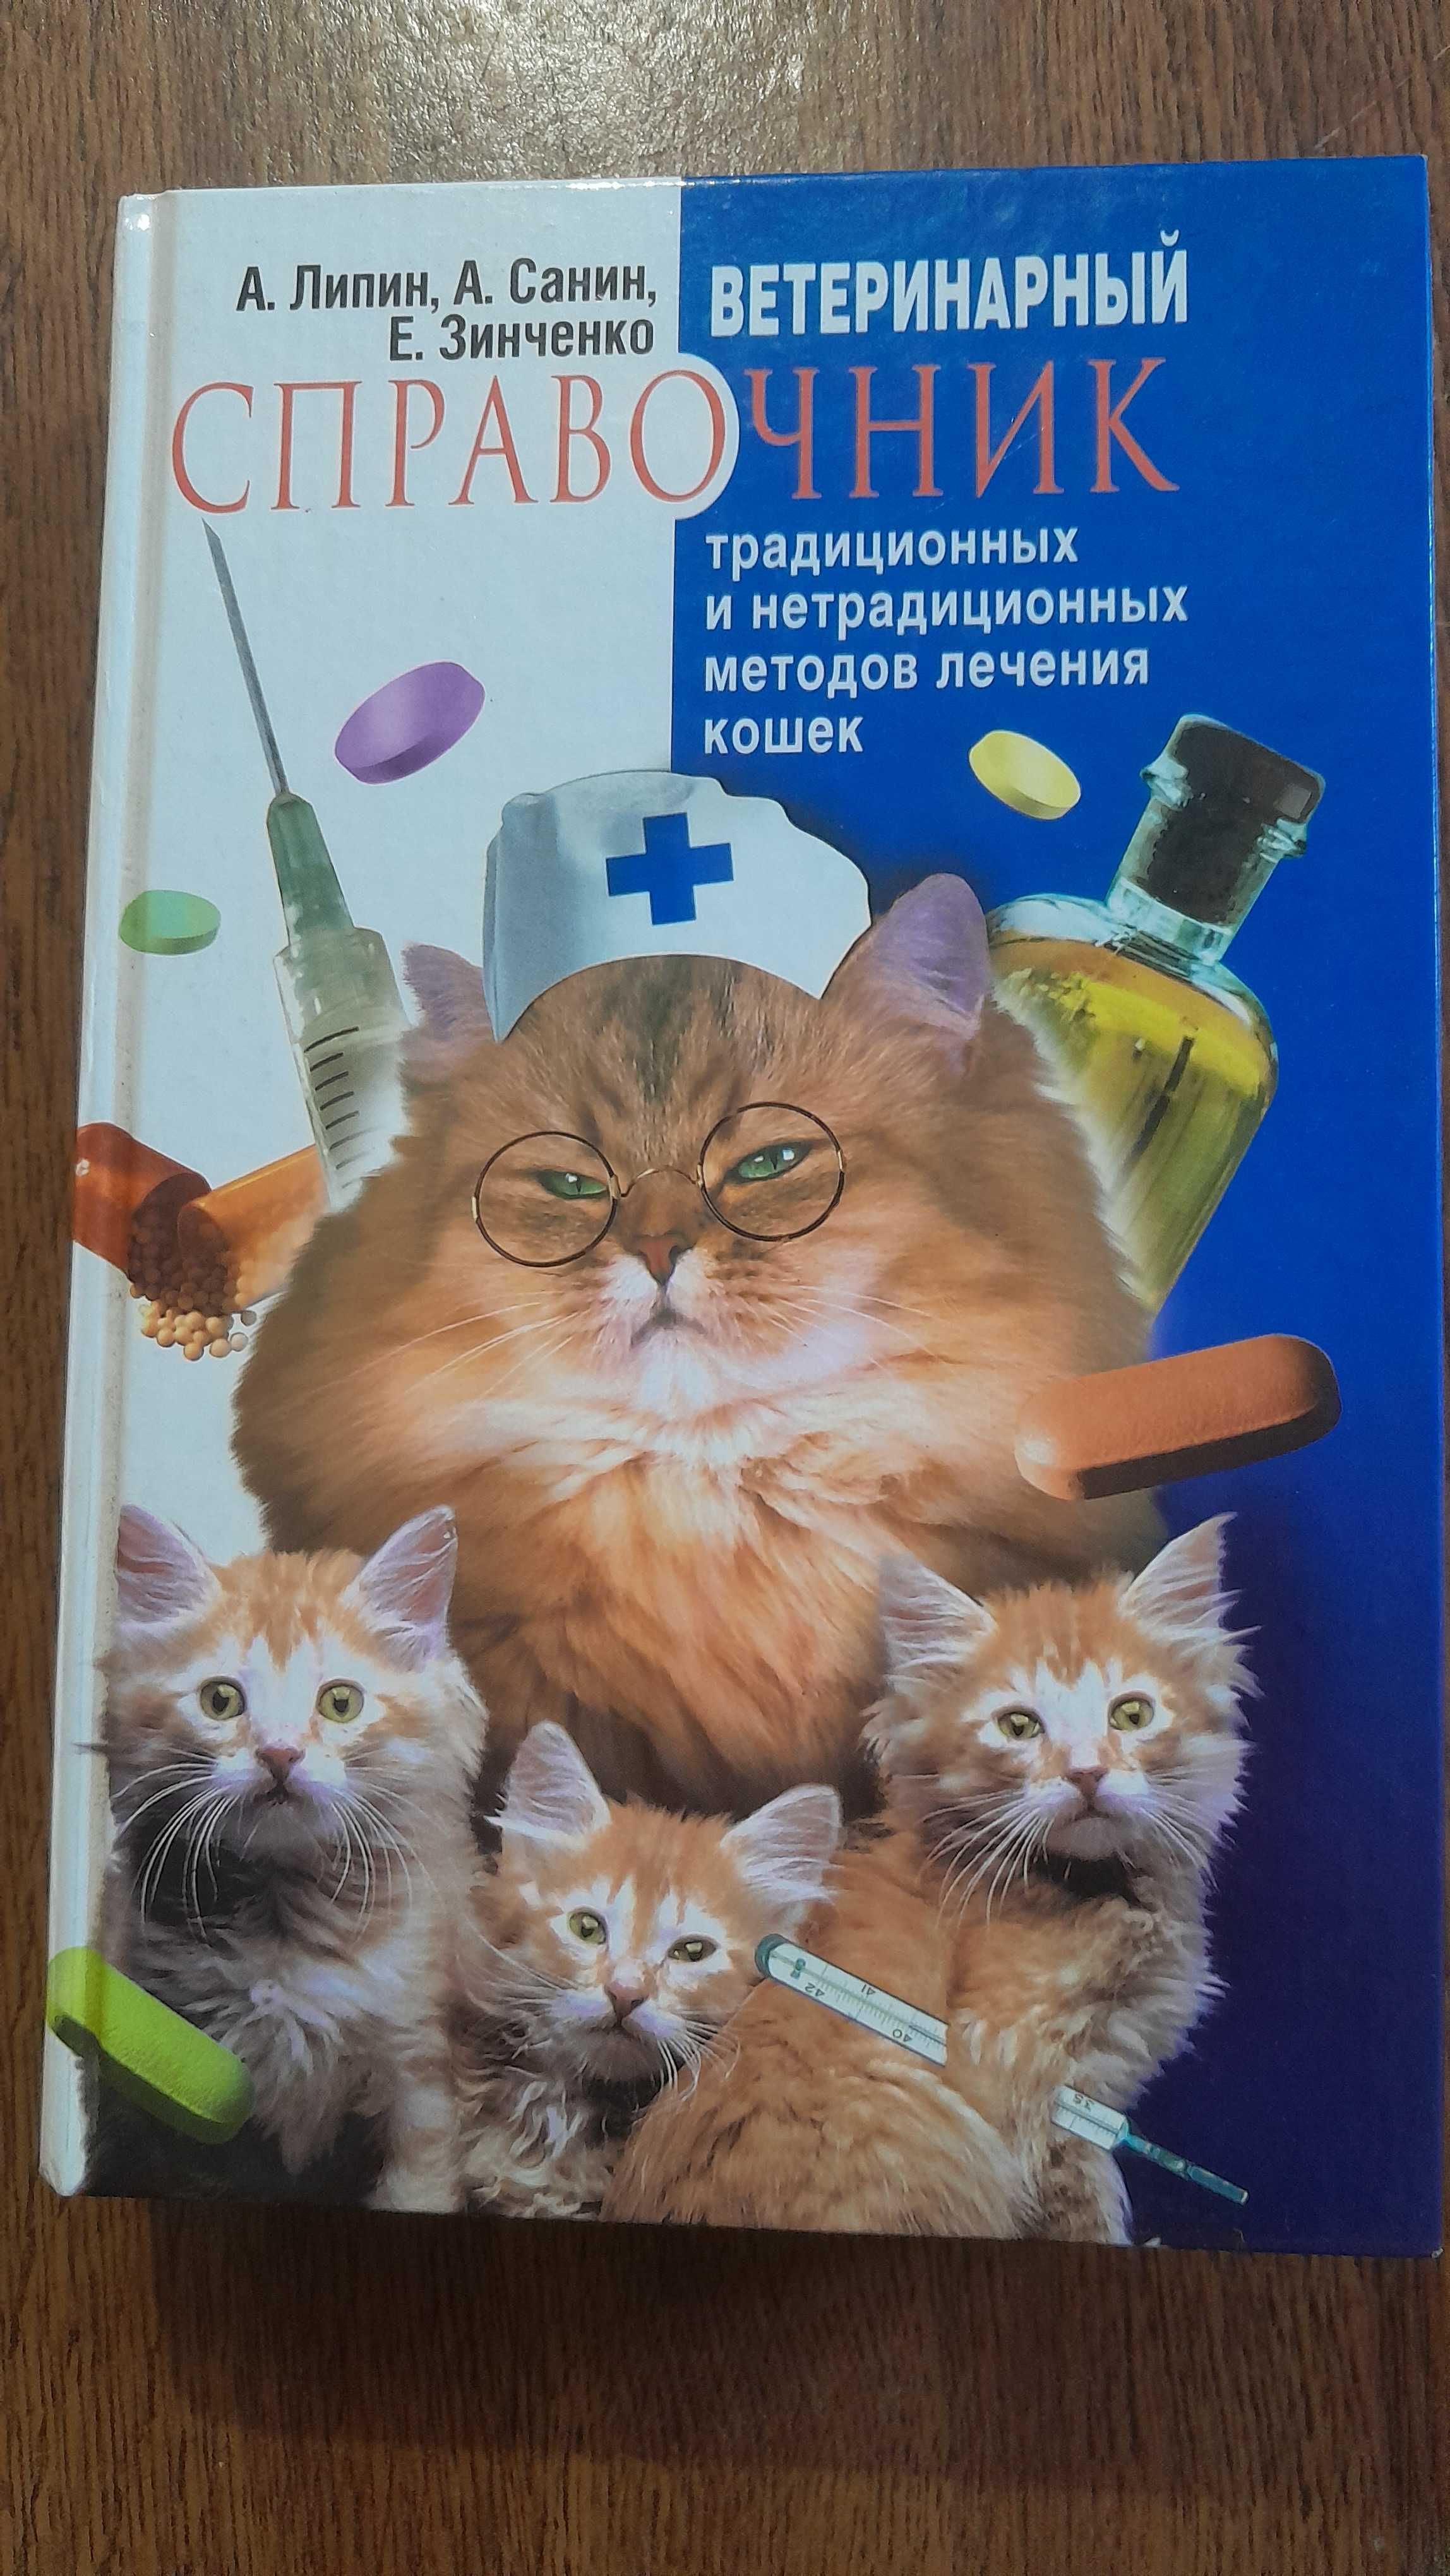 традиционные и нетрадиционные методы лечения кошек